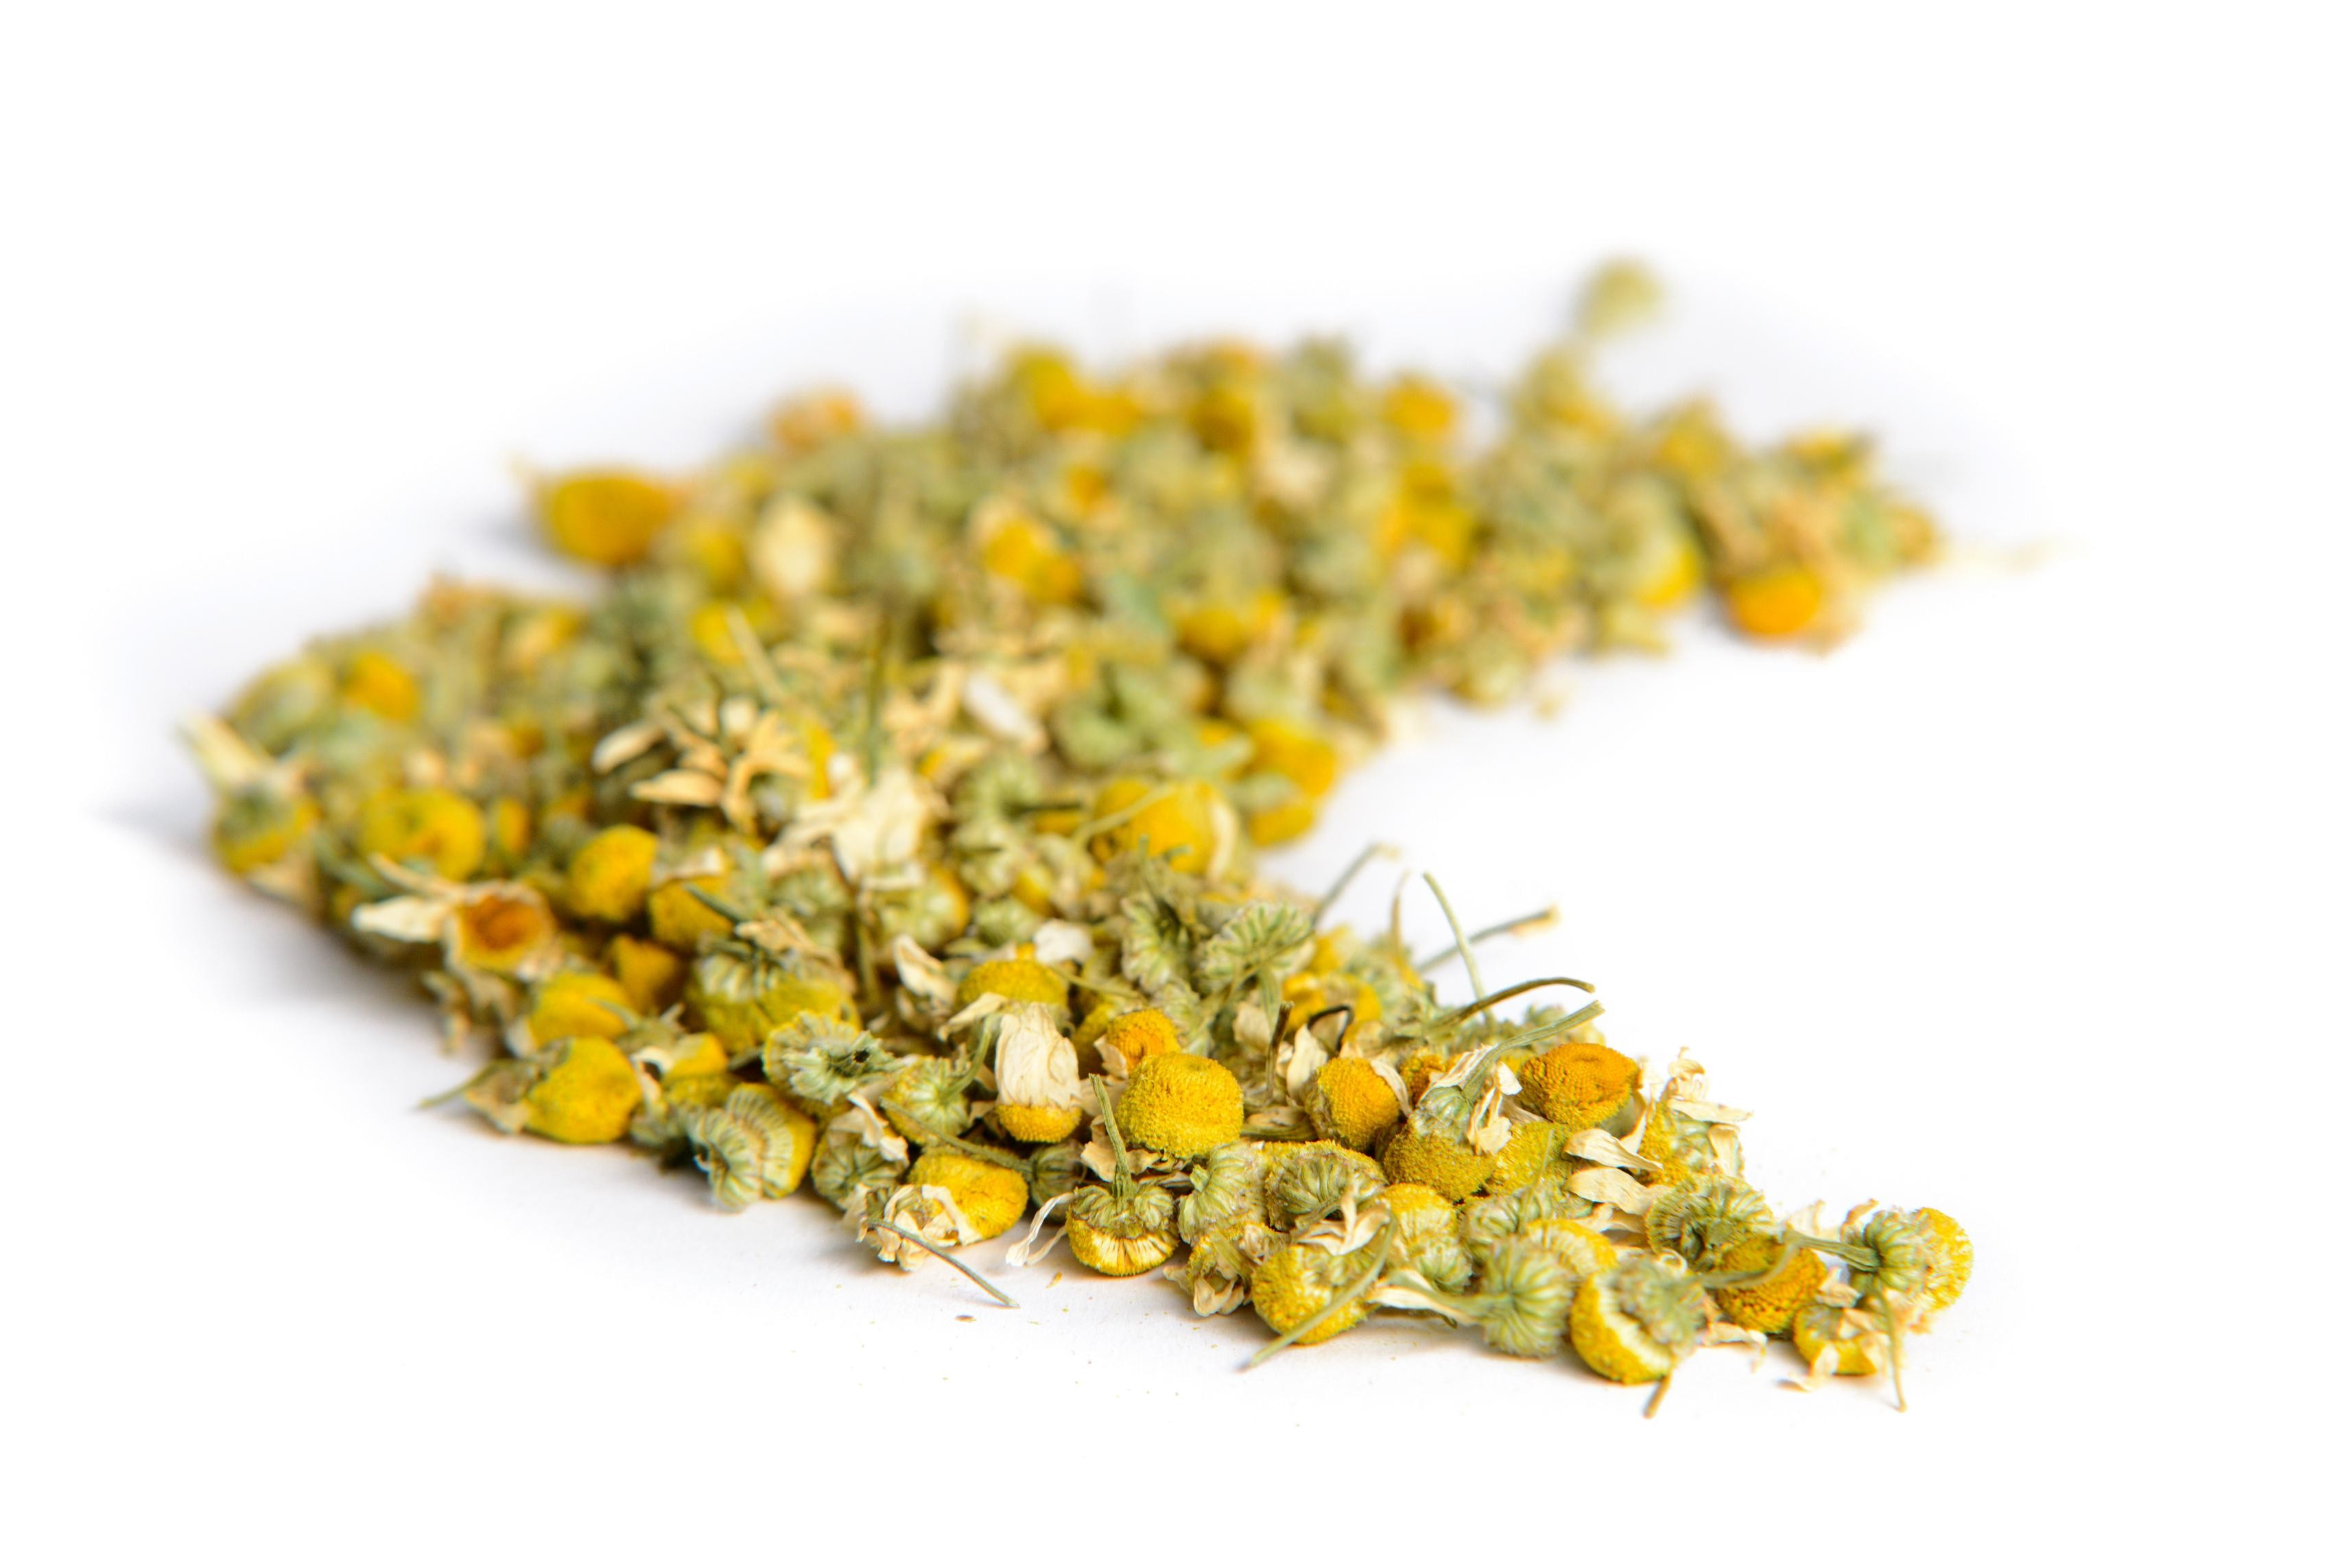 Loose Leaf Moringa and Camomile Tea